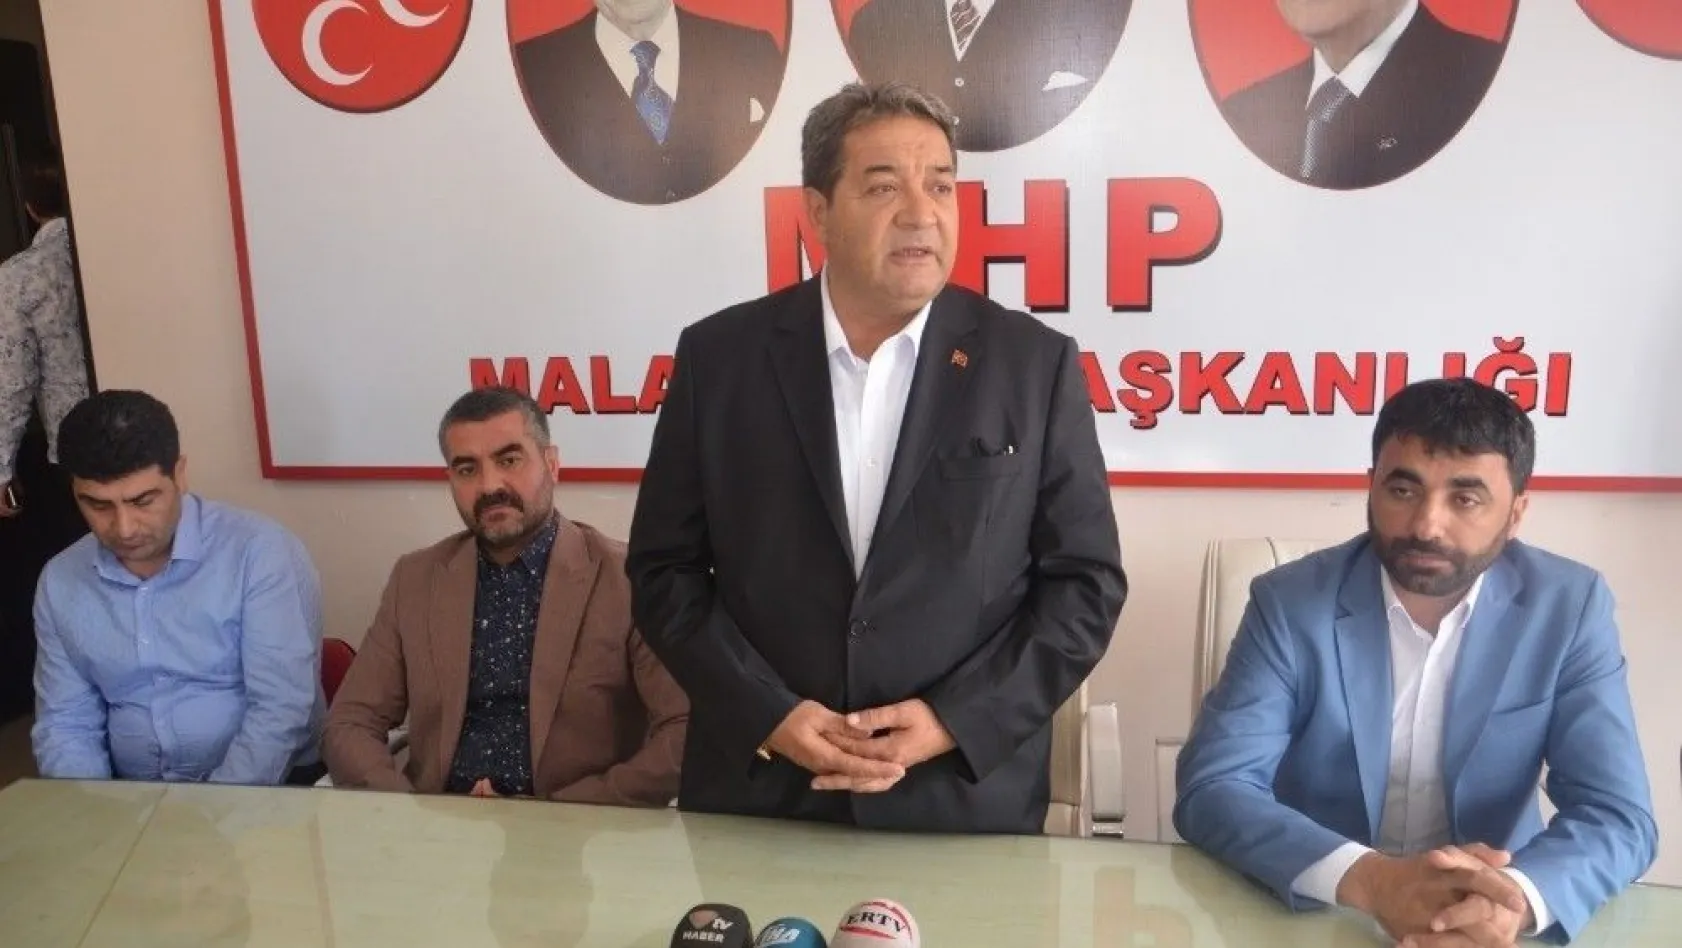 MHP'li Milletvekili Fendoğlu'ndan ittifak değerlendirmesi
